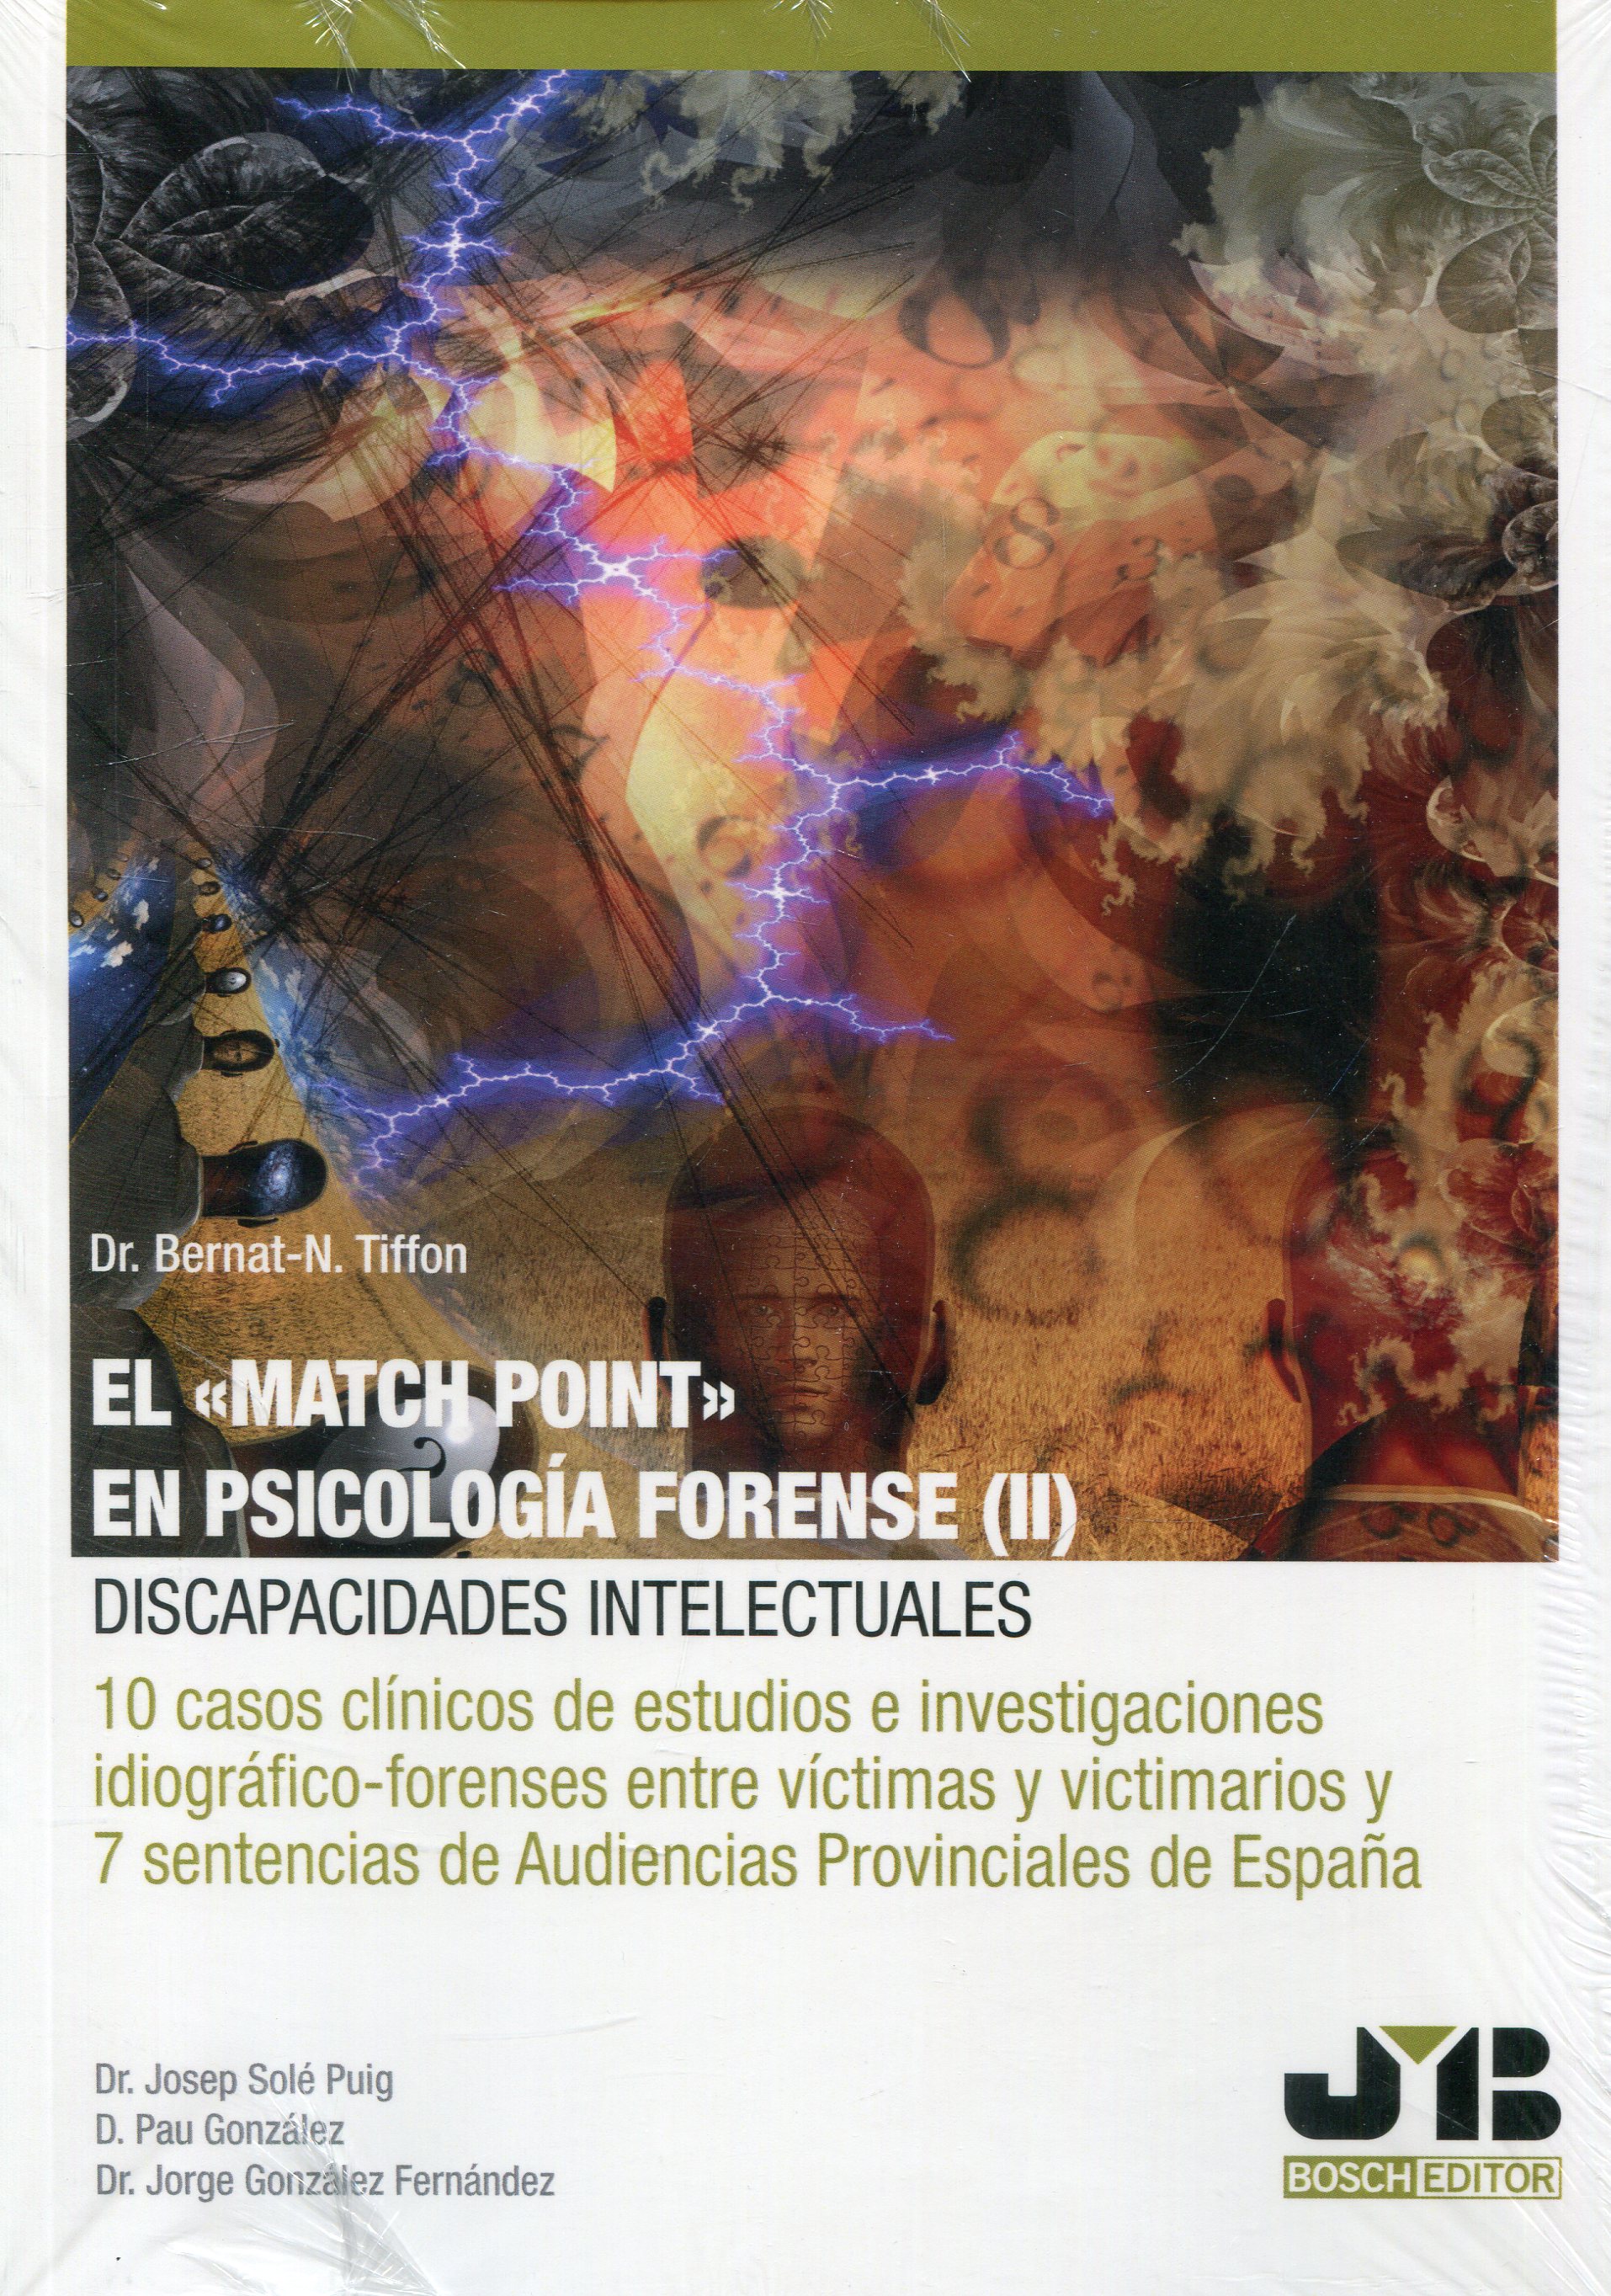 Imagen de portada del libro El "Match Point" de en psicología forense (II). Discapacidades intelectuales